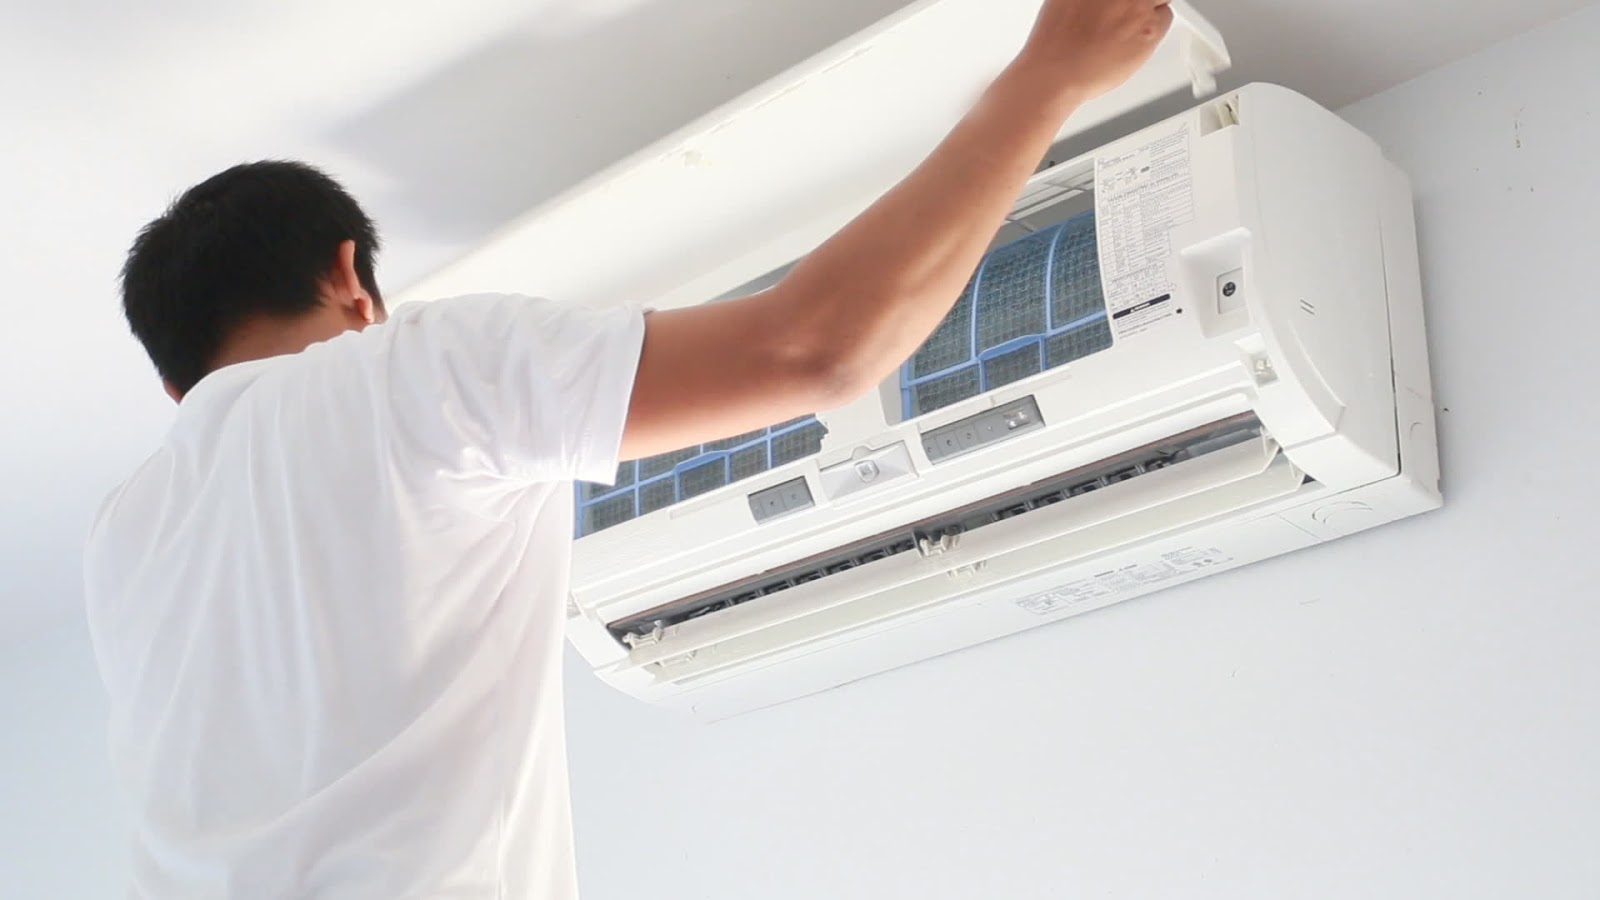 كيف تعتنى بالتكييف المنزلي ؟ | أجهزة منزلية و كهربائية في الكويت Air-conditioning-service